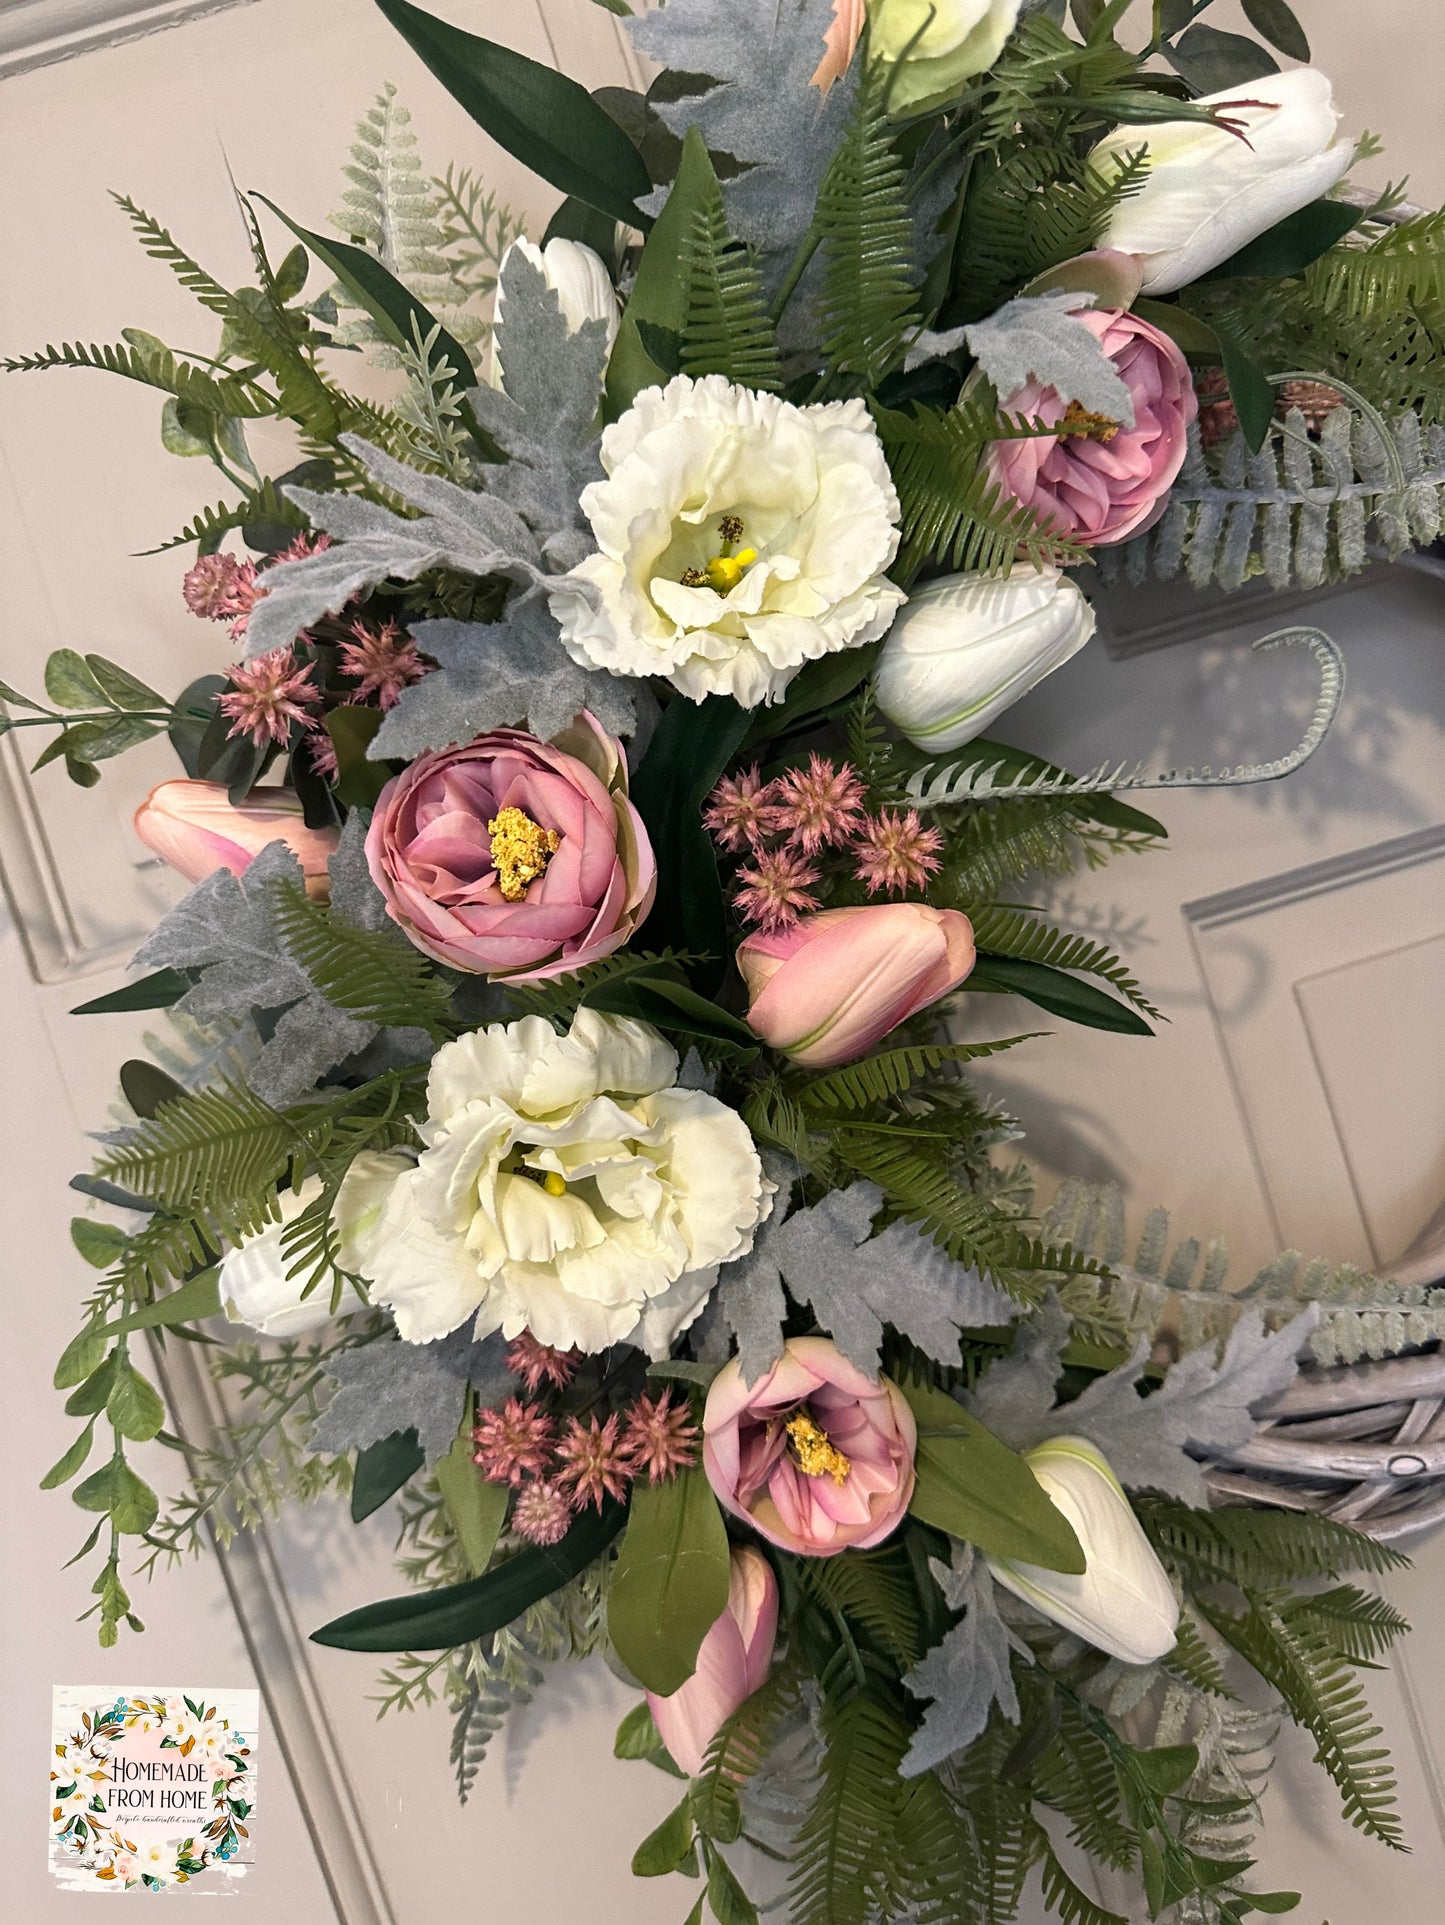 Tintagel rose & lisianthus signature wreath